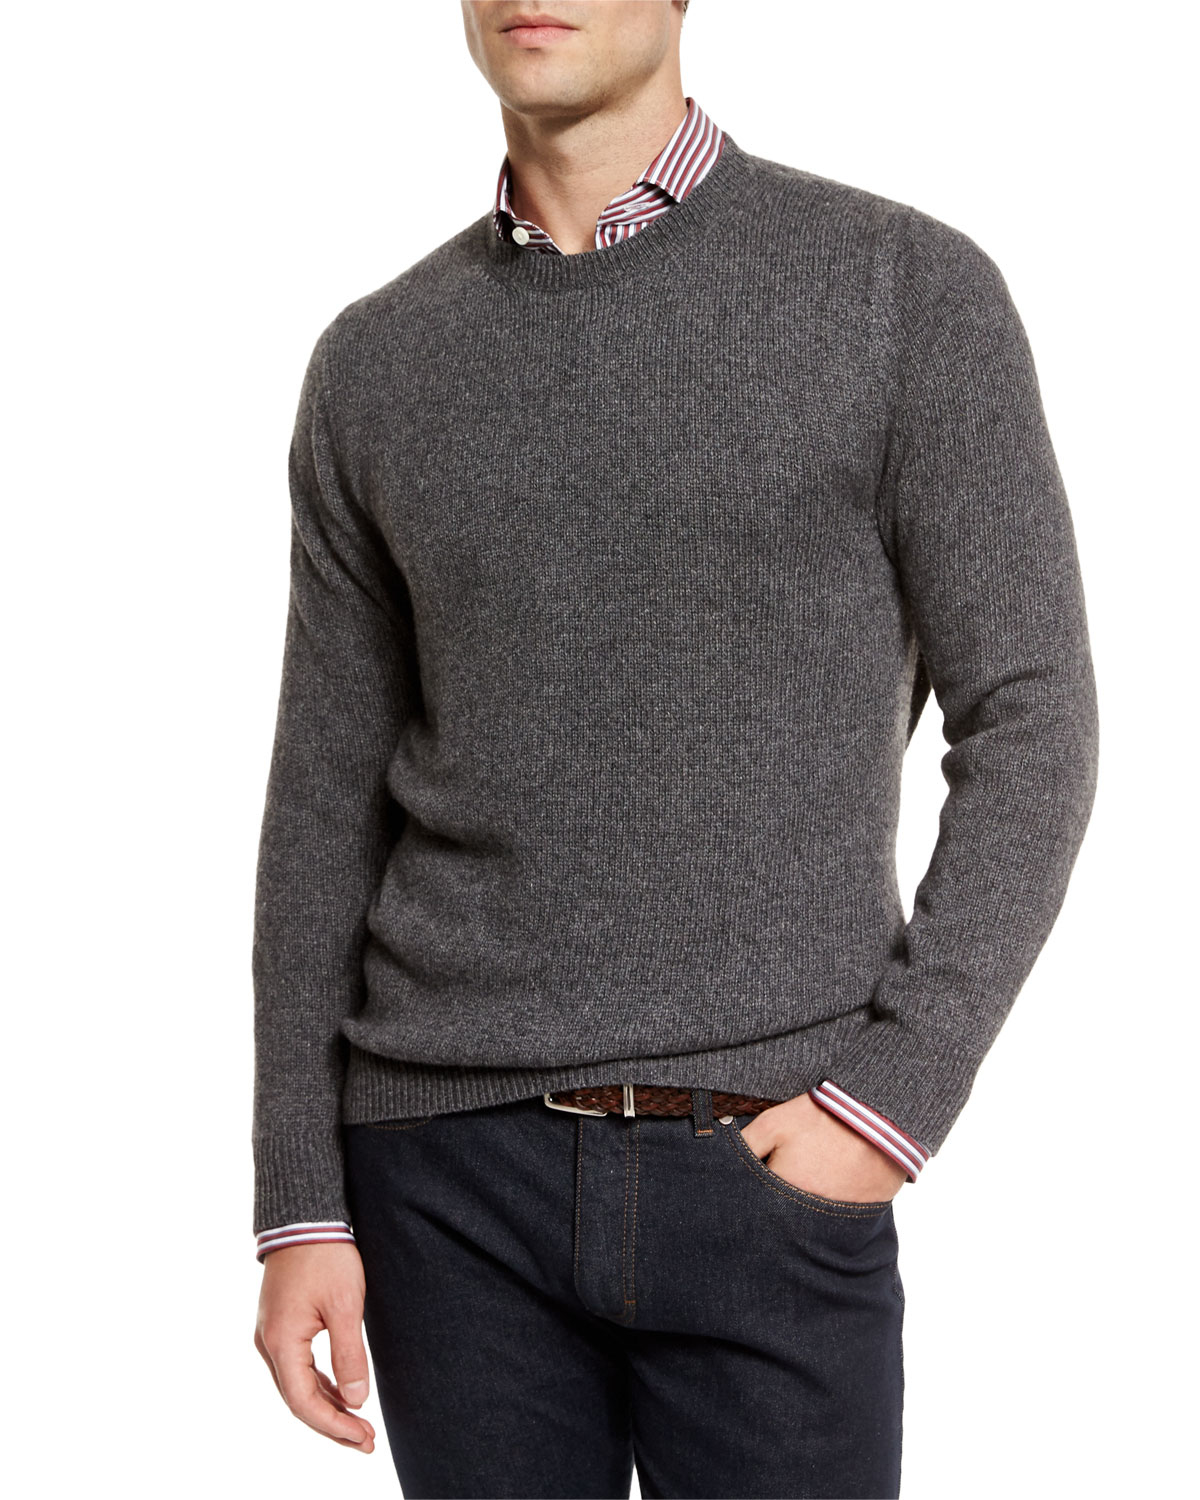 Ermenegildo Zegna Melange Cashmere-blend Sweater in Gray for Men - Lyst